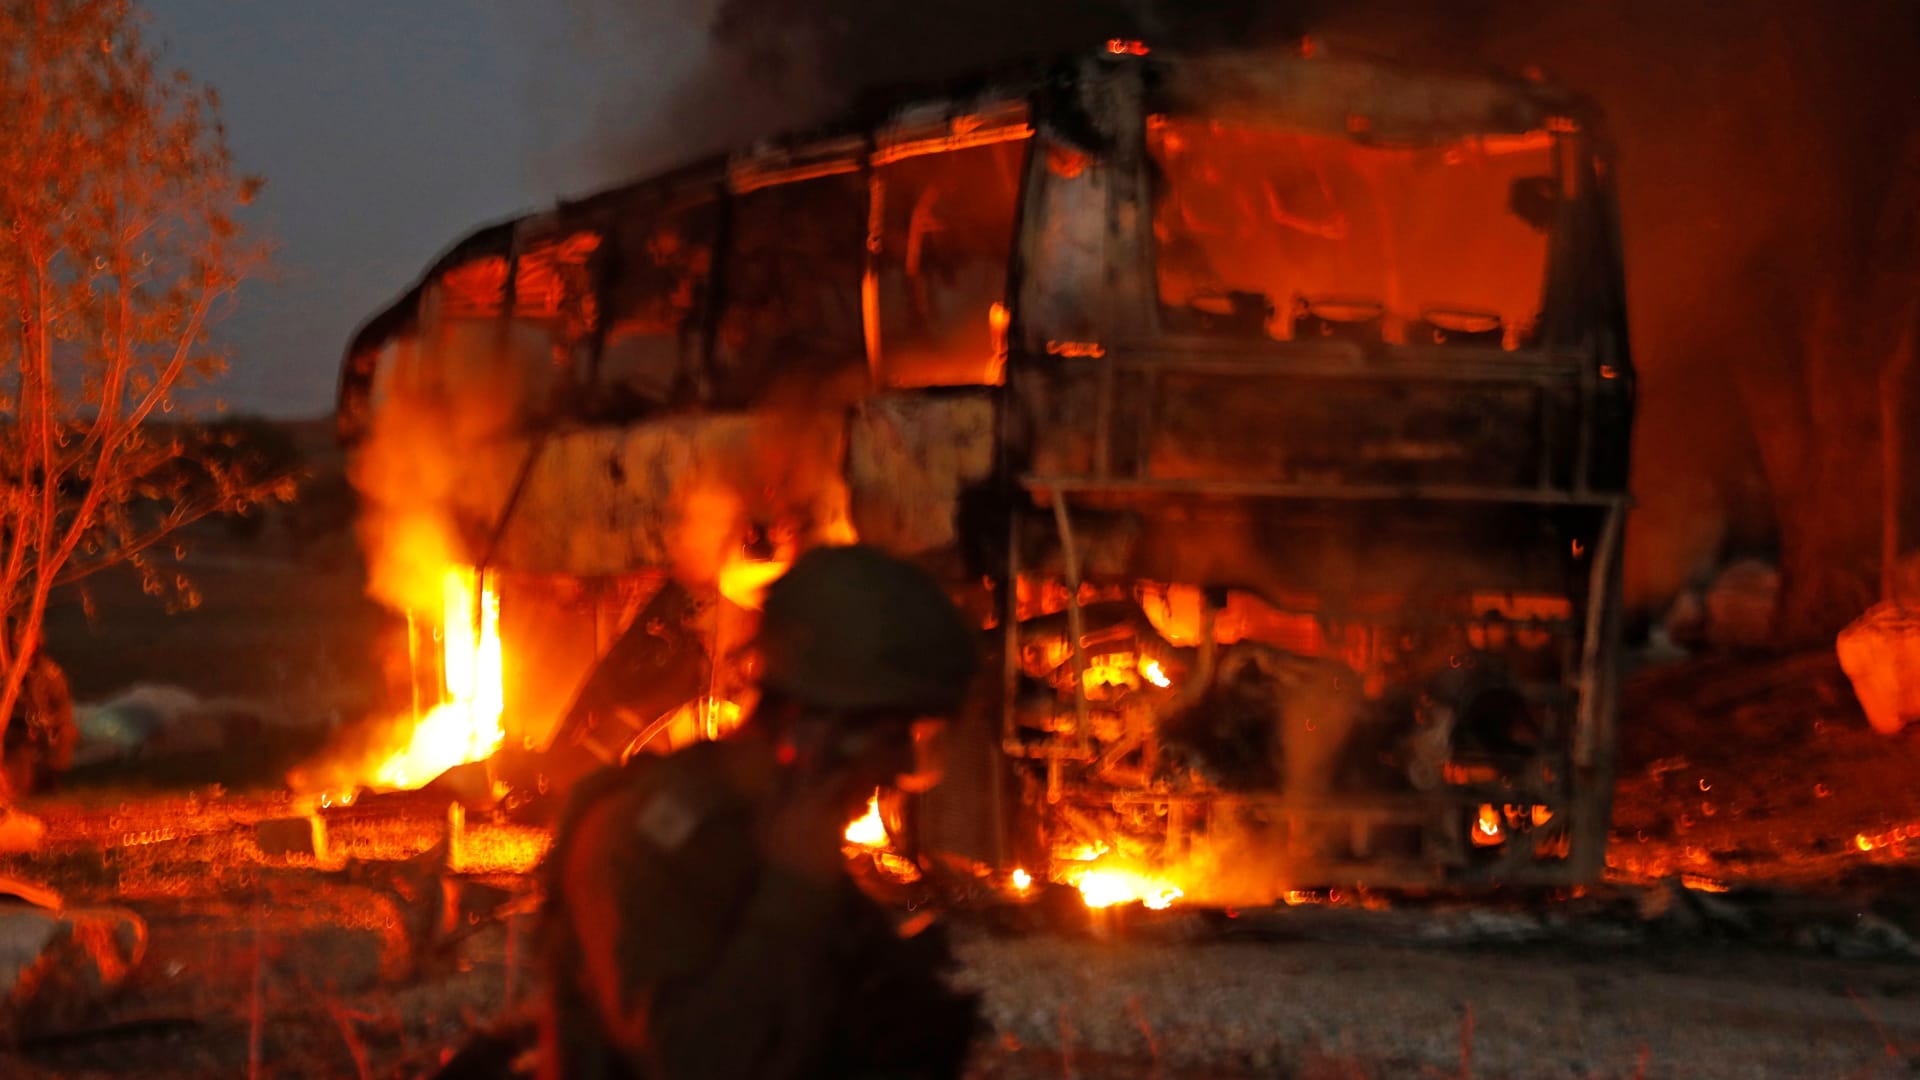 احتراق حافلة إسرائيلية جراء قصف صاروخي من غزة